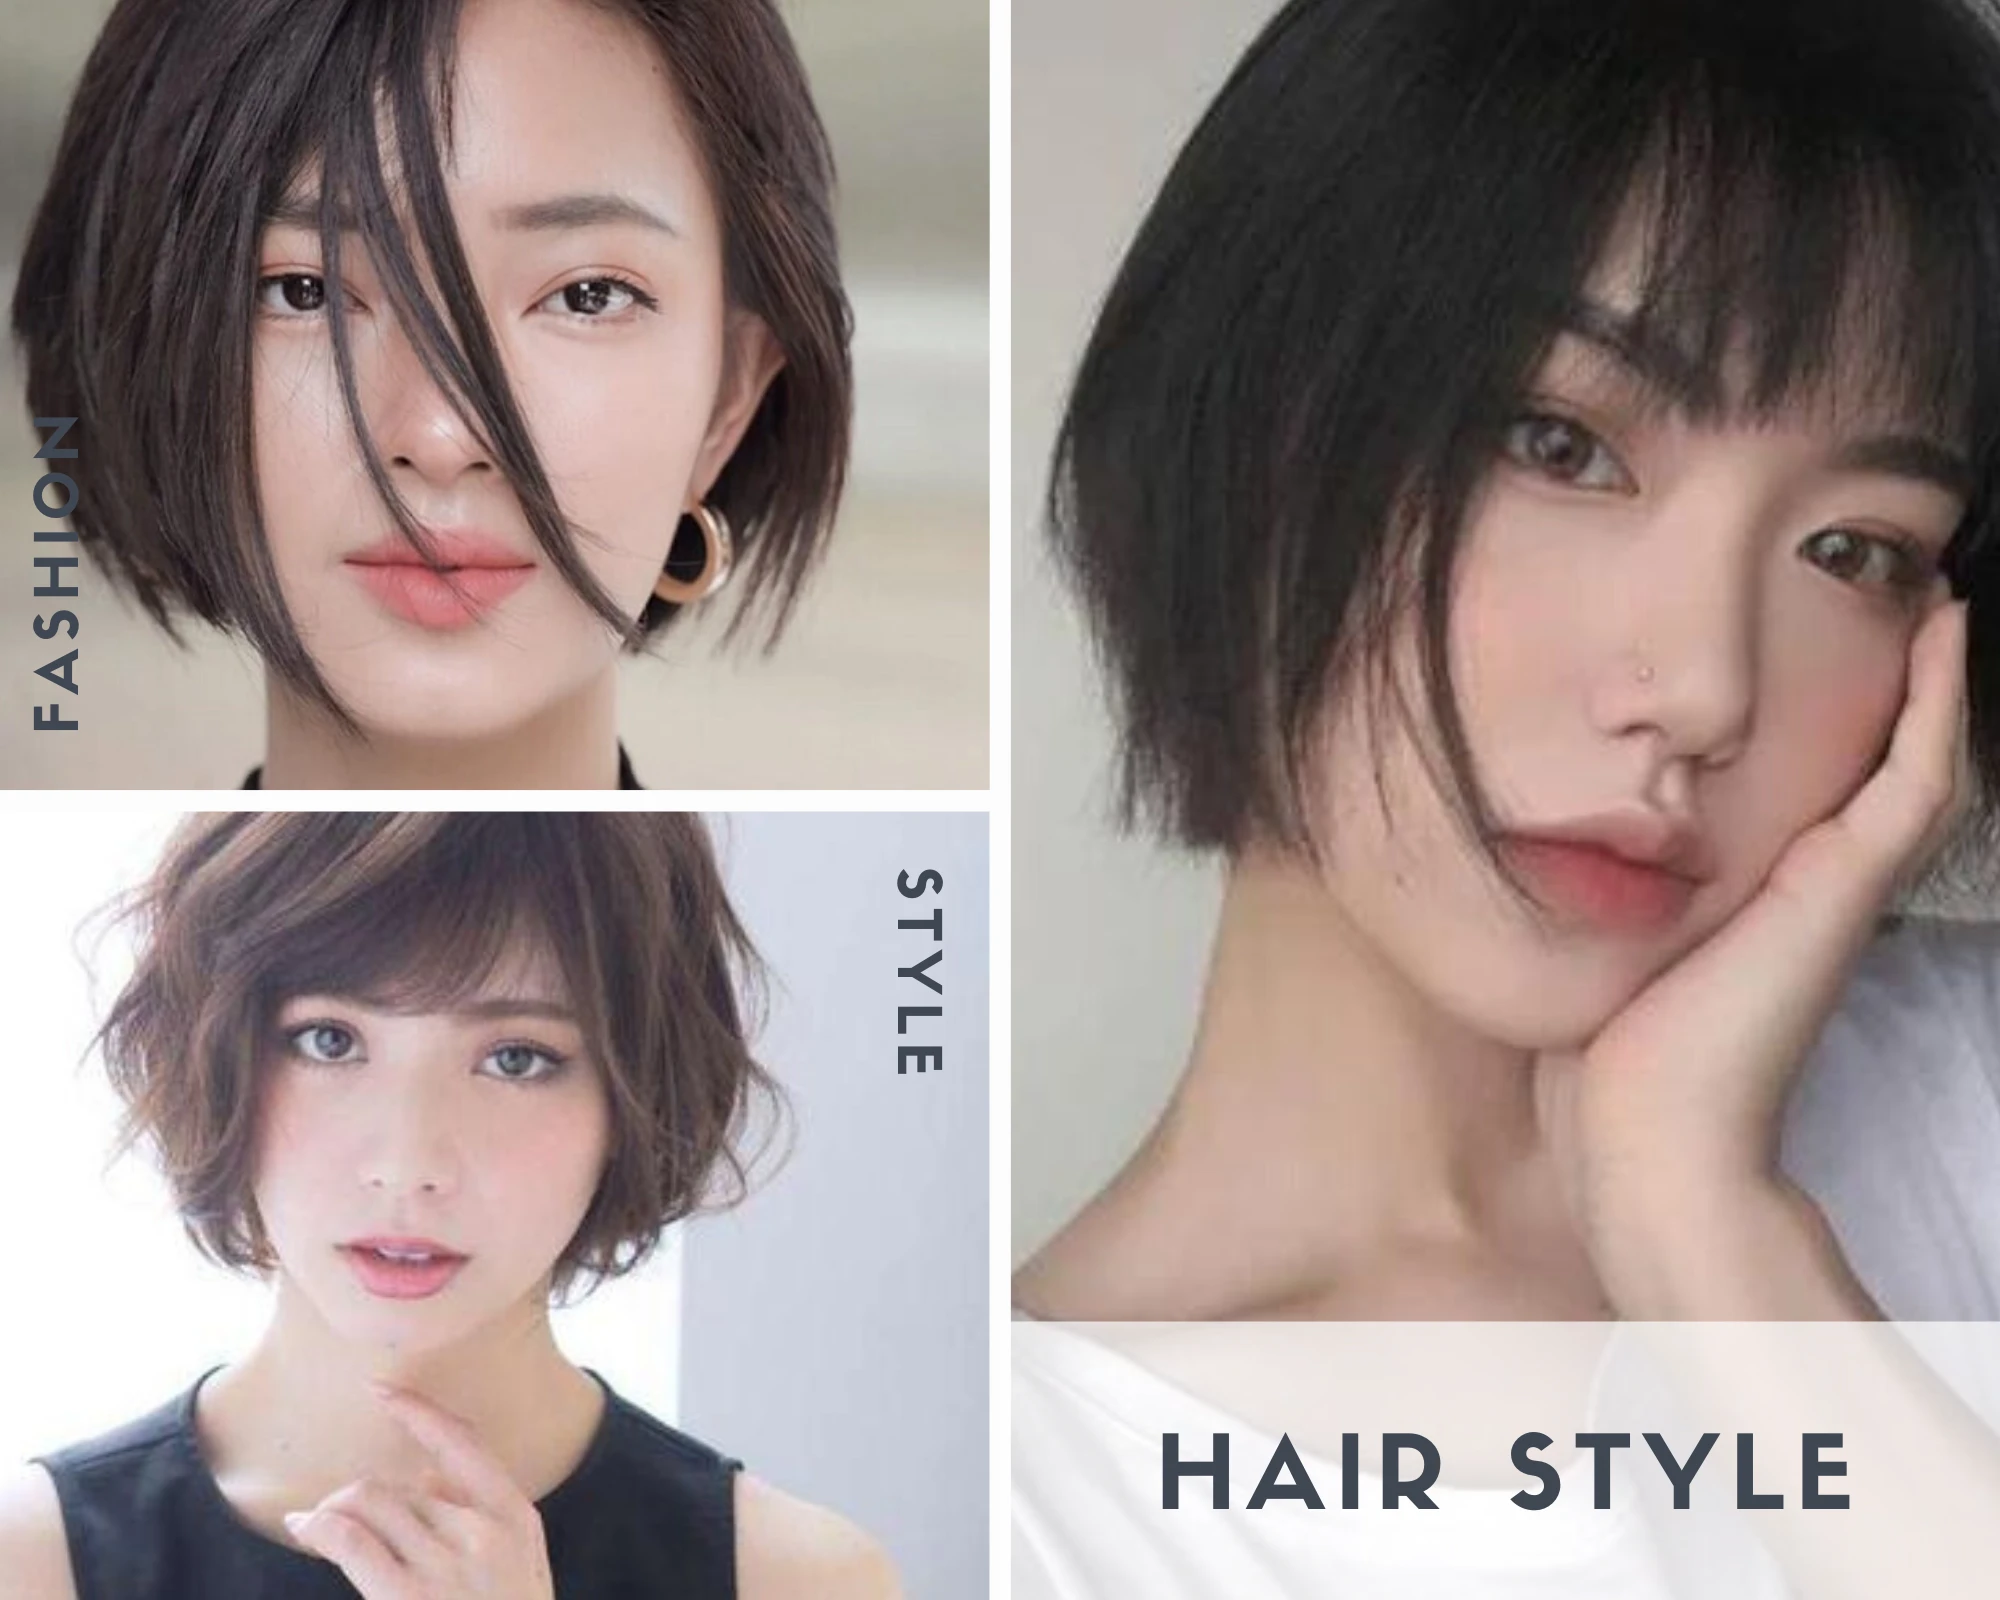 5 kiểu tóc ngắn cho phụ nữ cá tính trong năm mới  Báo Khánh Hòa điện tử